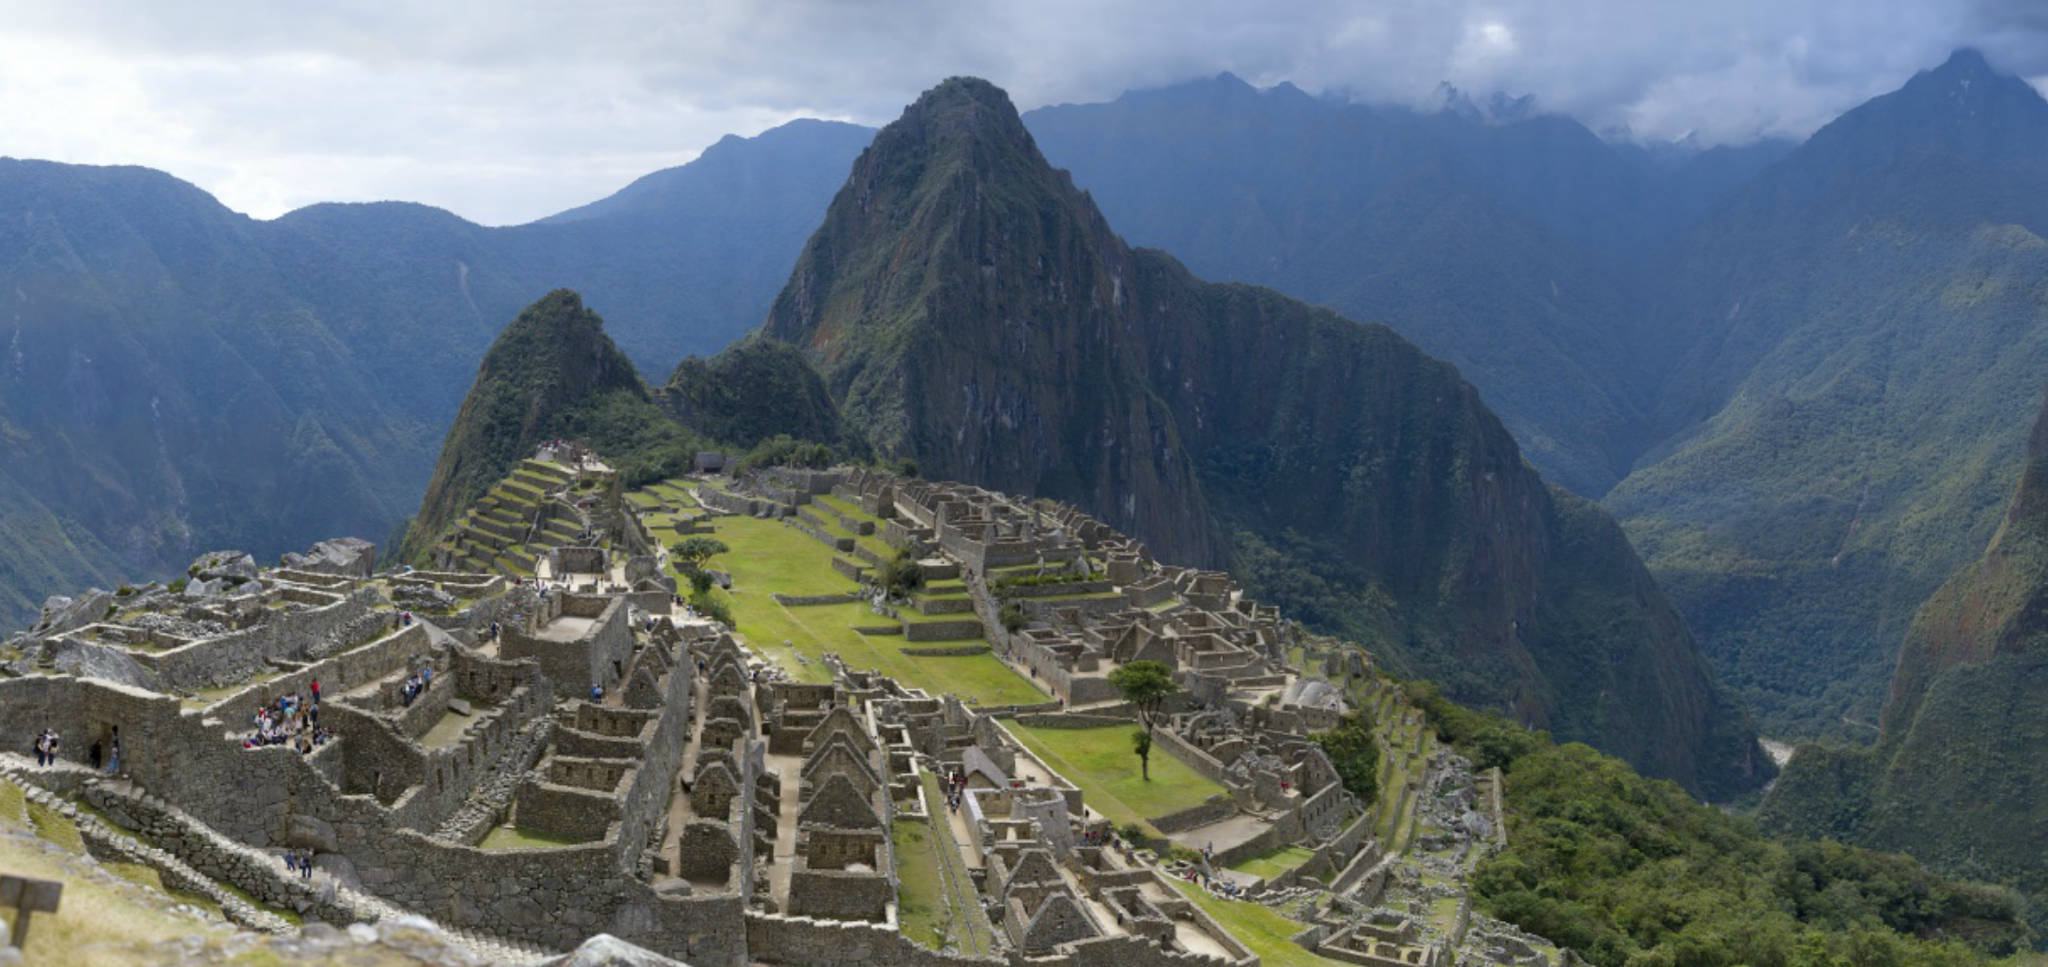 Obrázek Machu Picchu 16 GigaPixels